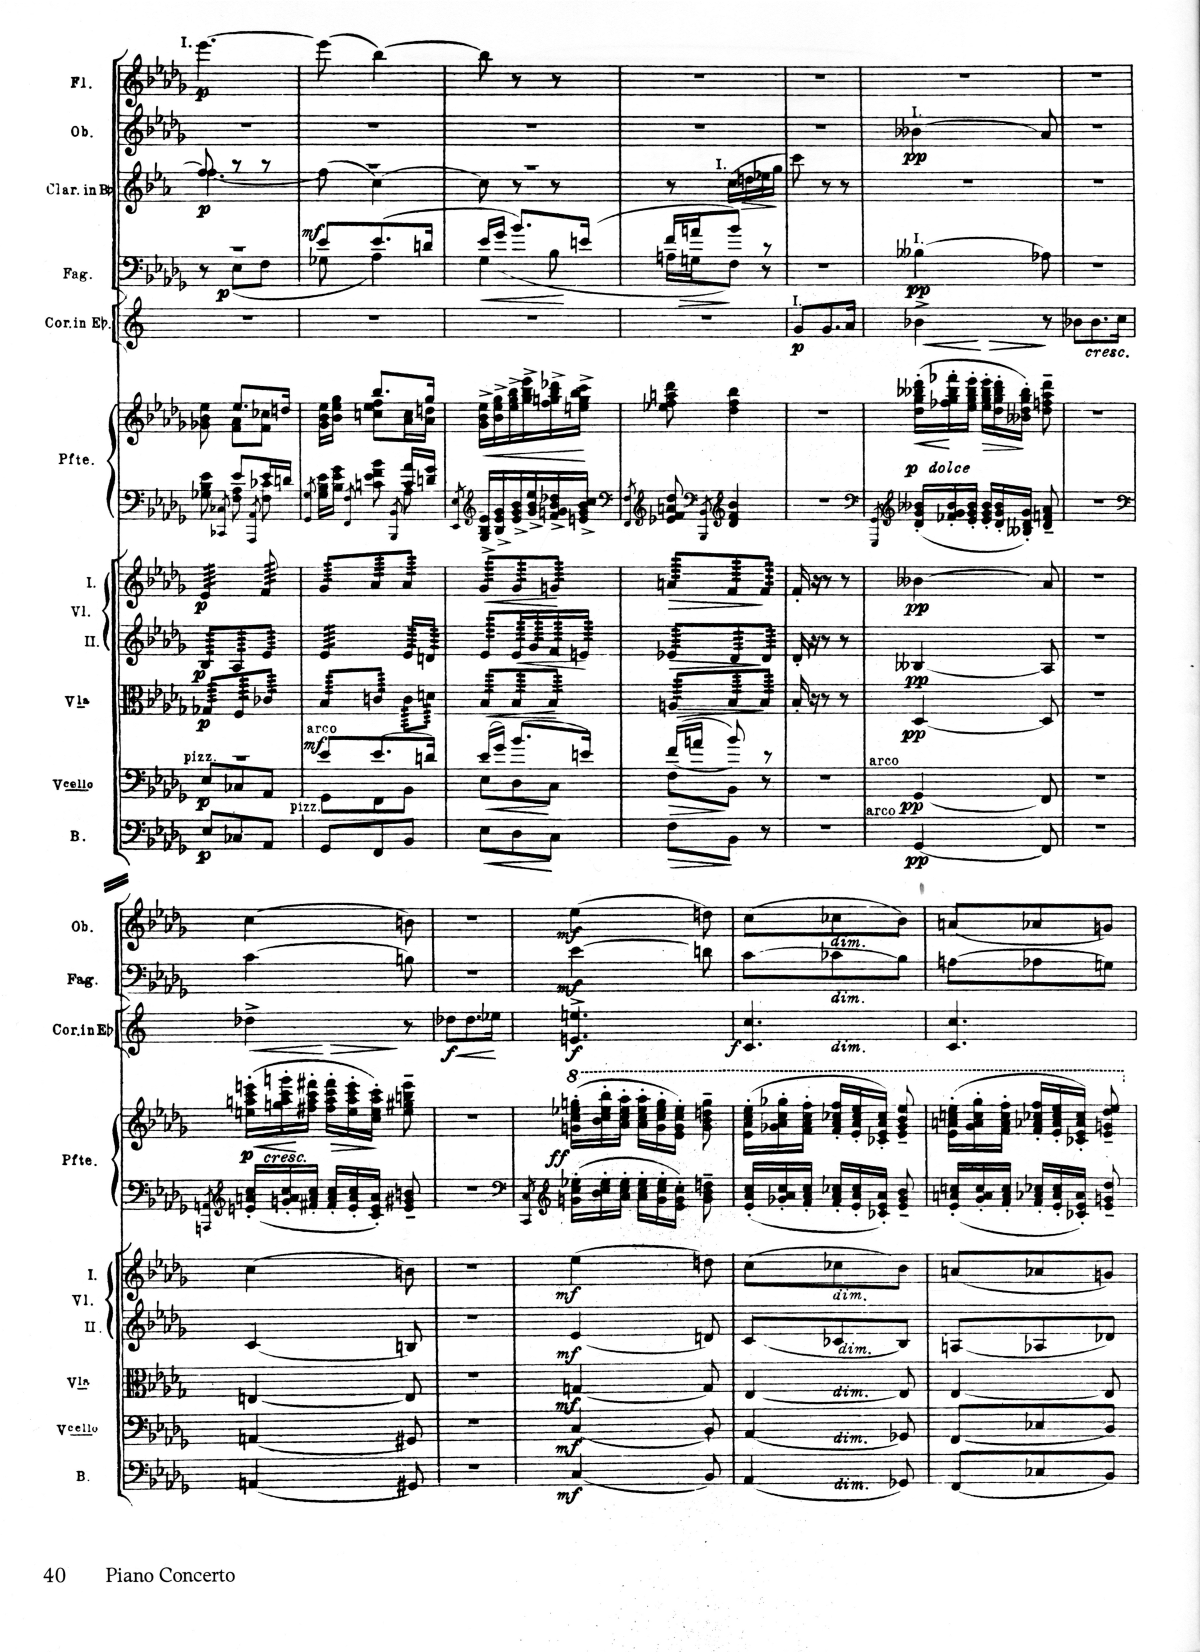 grieg-piano-concerto-adagio-excerpt.png